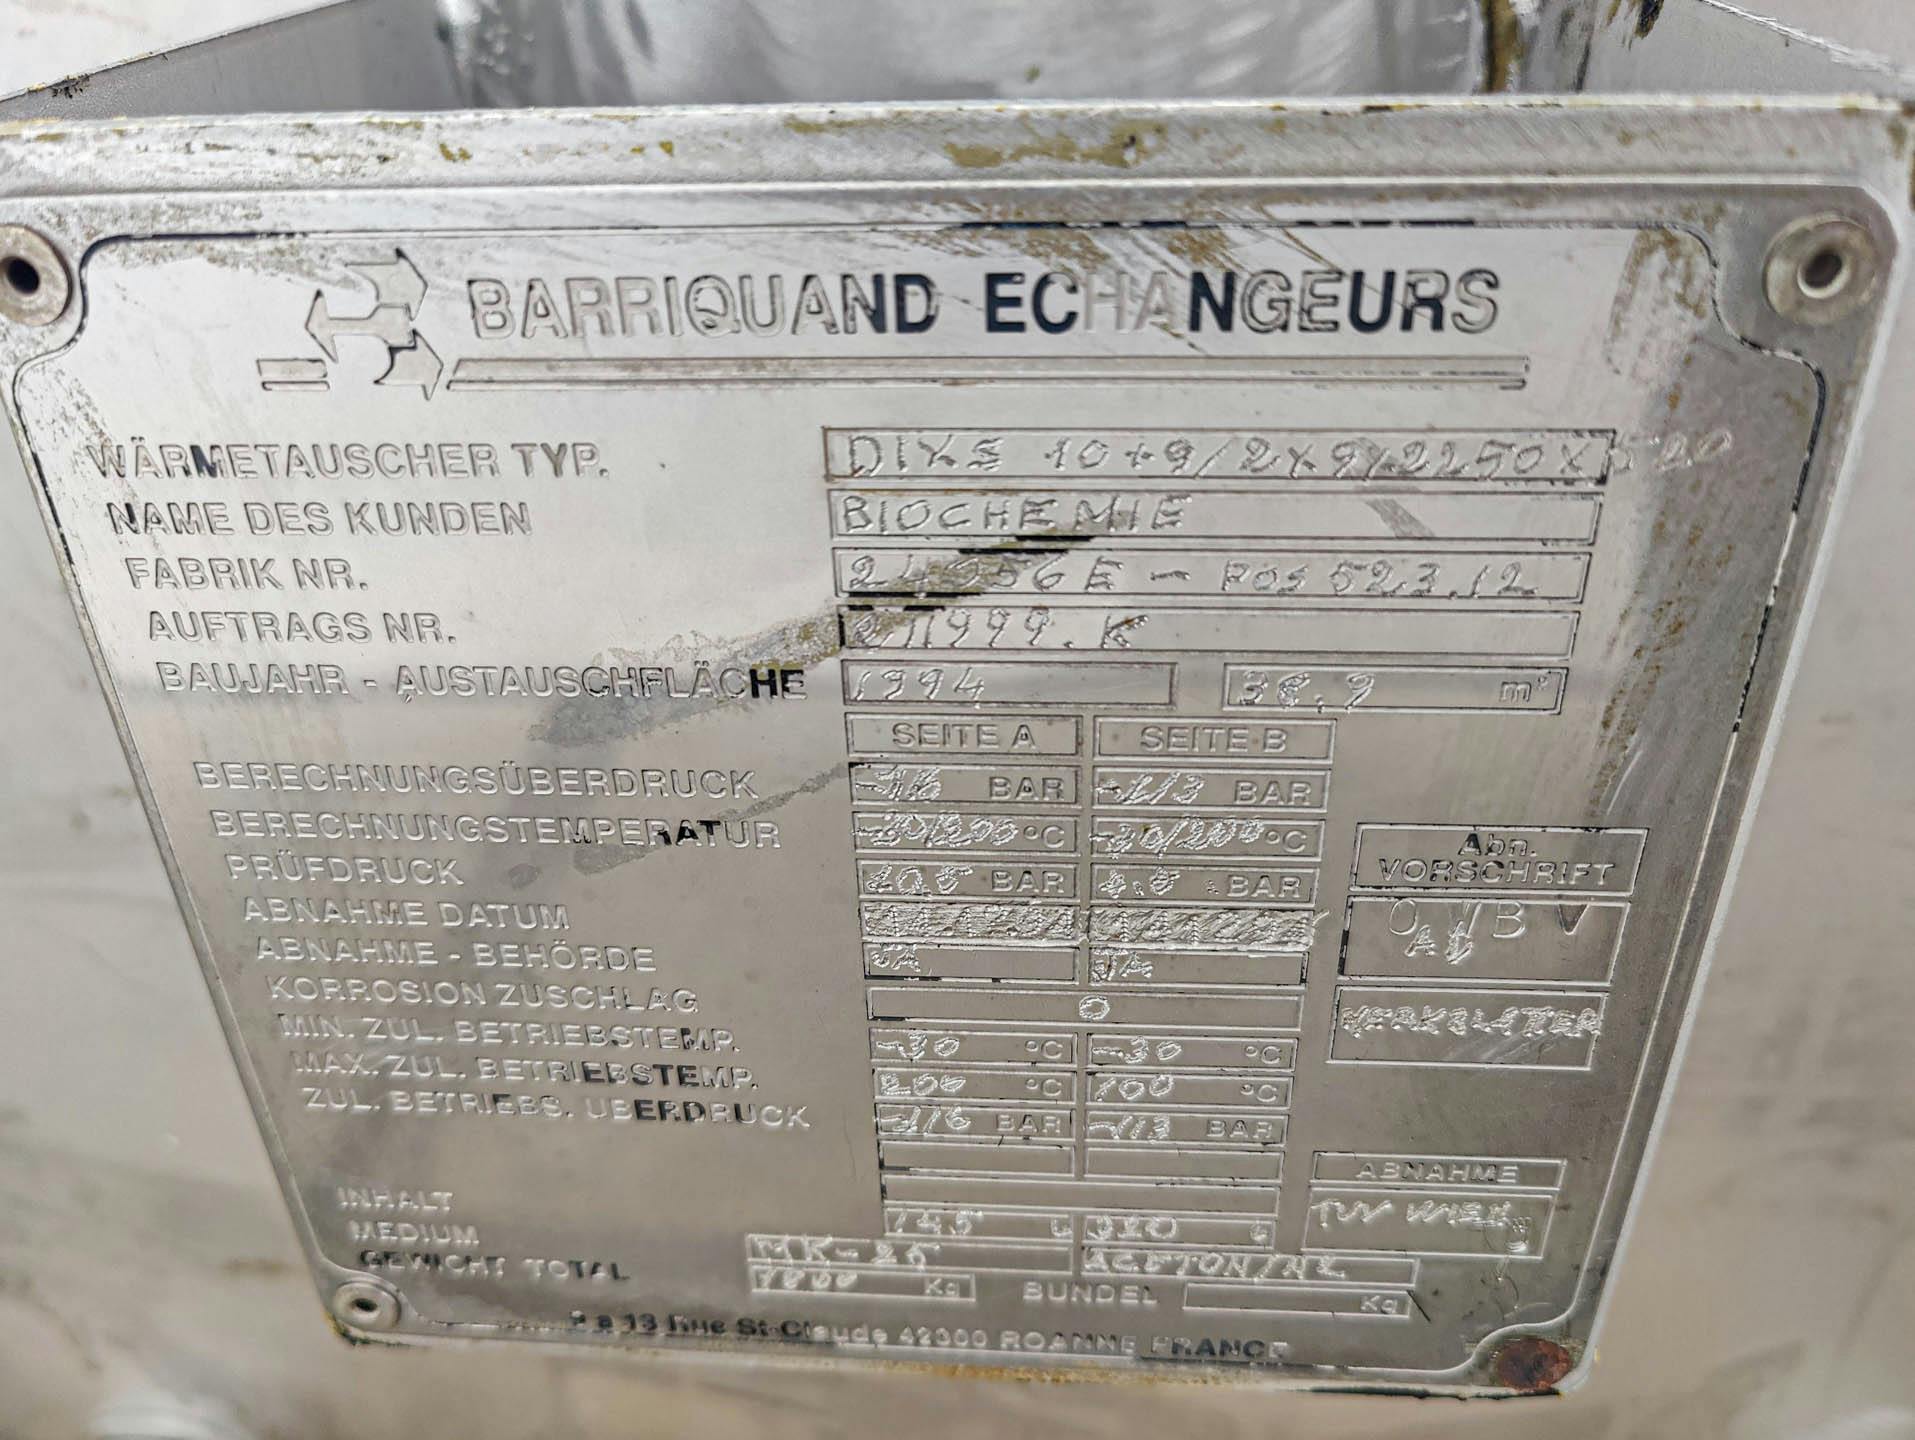 Barriquand Platular DIXS condensor - Plattenwärmetauscher - image 8